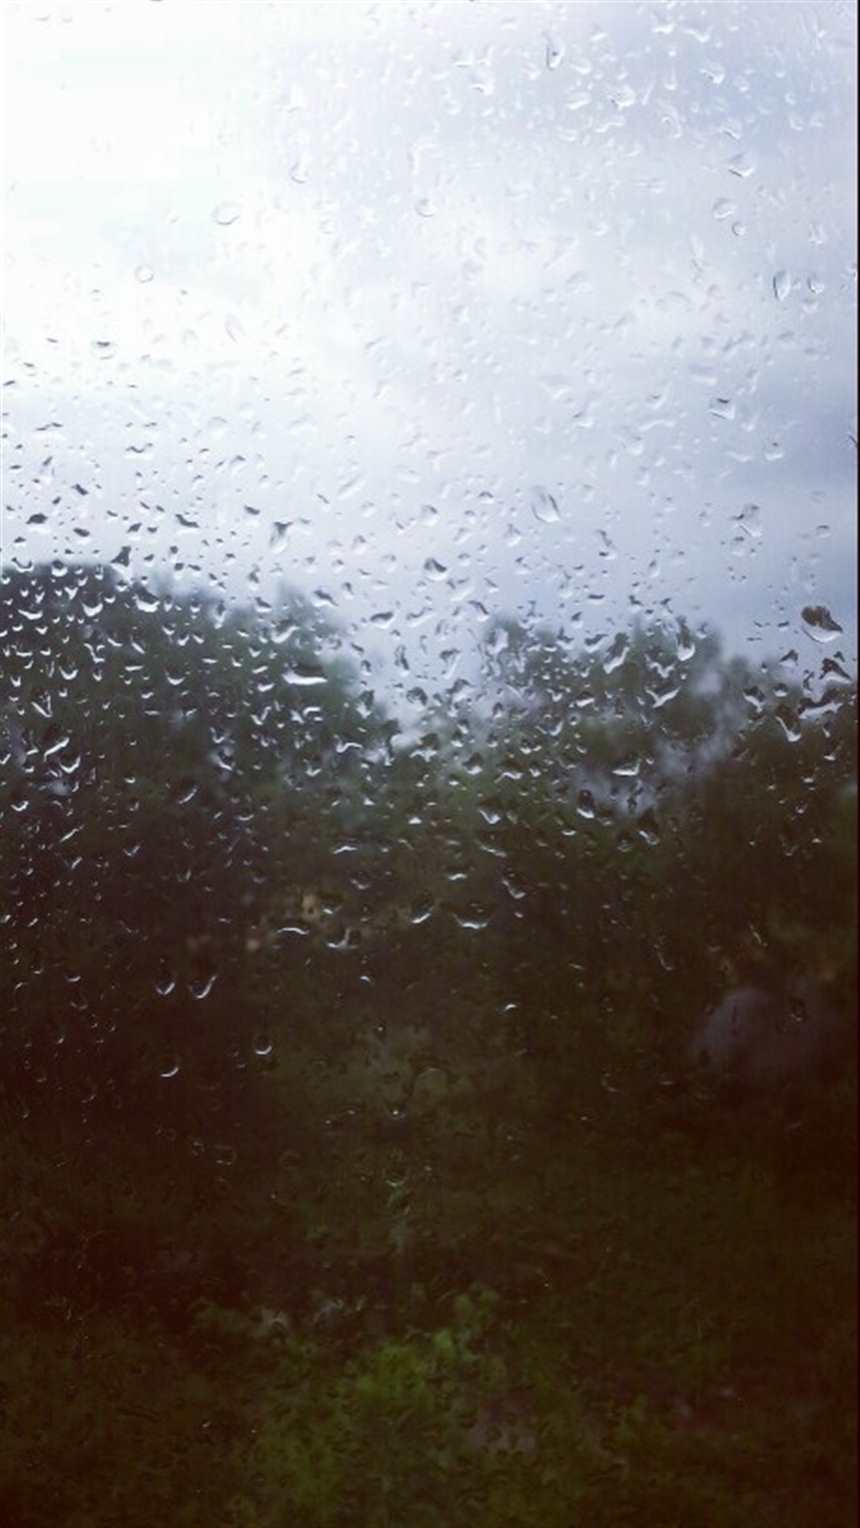 下雨天…总是让人心情烦躁的#下雨